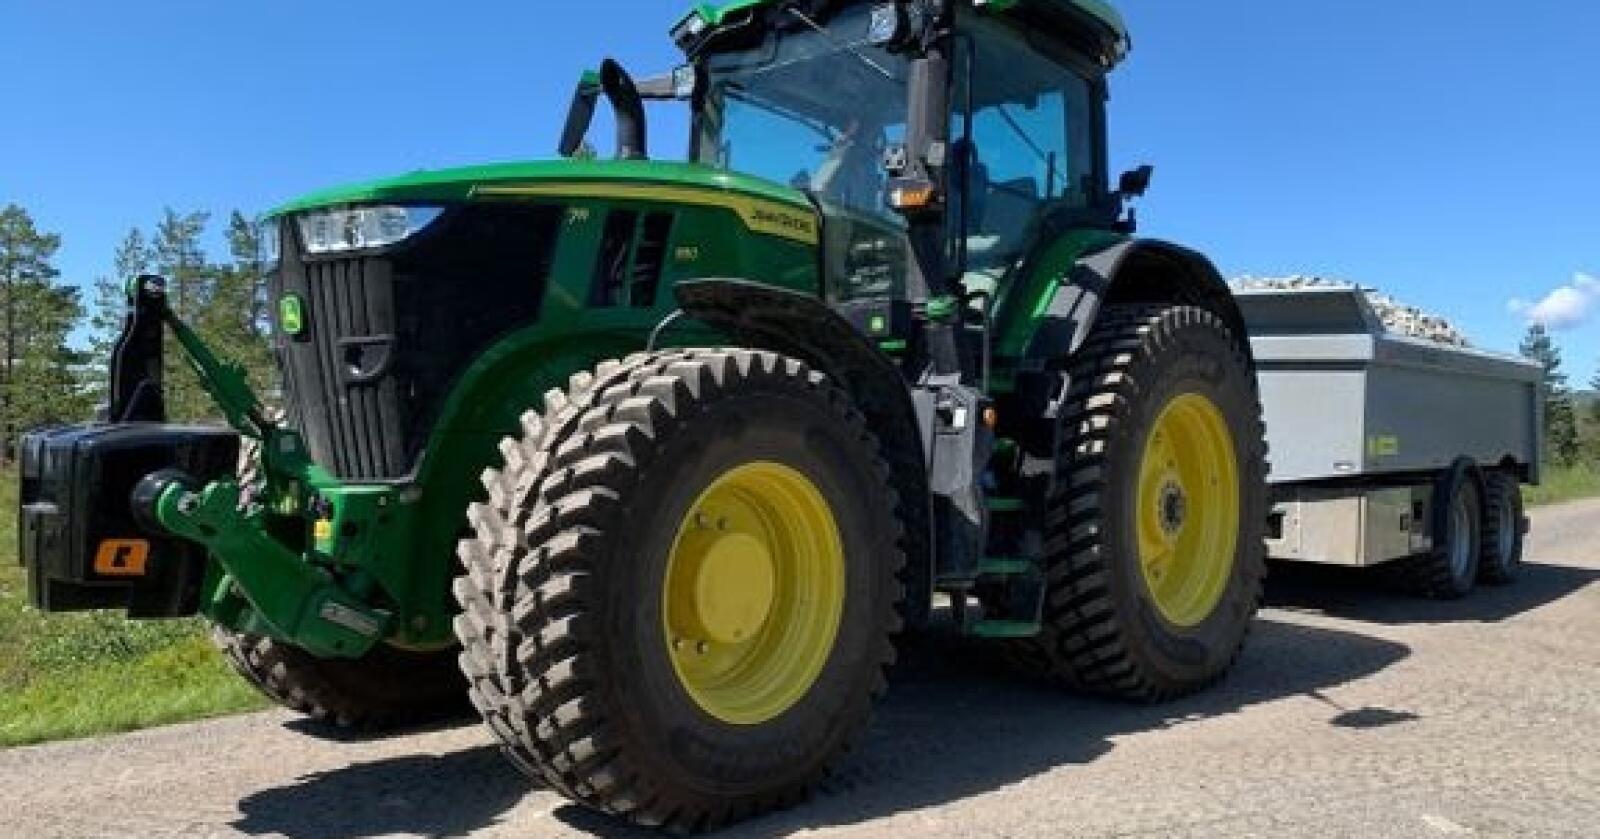 Årets traktor: Oppgraderte John Deere 7R.350 dro i land den gjeveste prisen. De største traktorene i 7R serien leverer mer effekt enn de minste i 8R-serien, slik at kjøpere kan velge mellom en mindre, og mer smidig traktor, eller en enda tyngre og større modell med samme effekten.